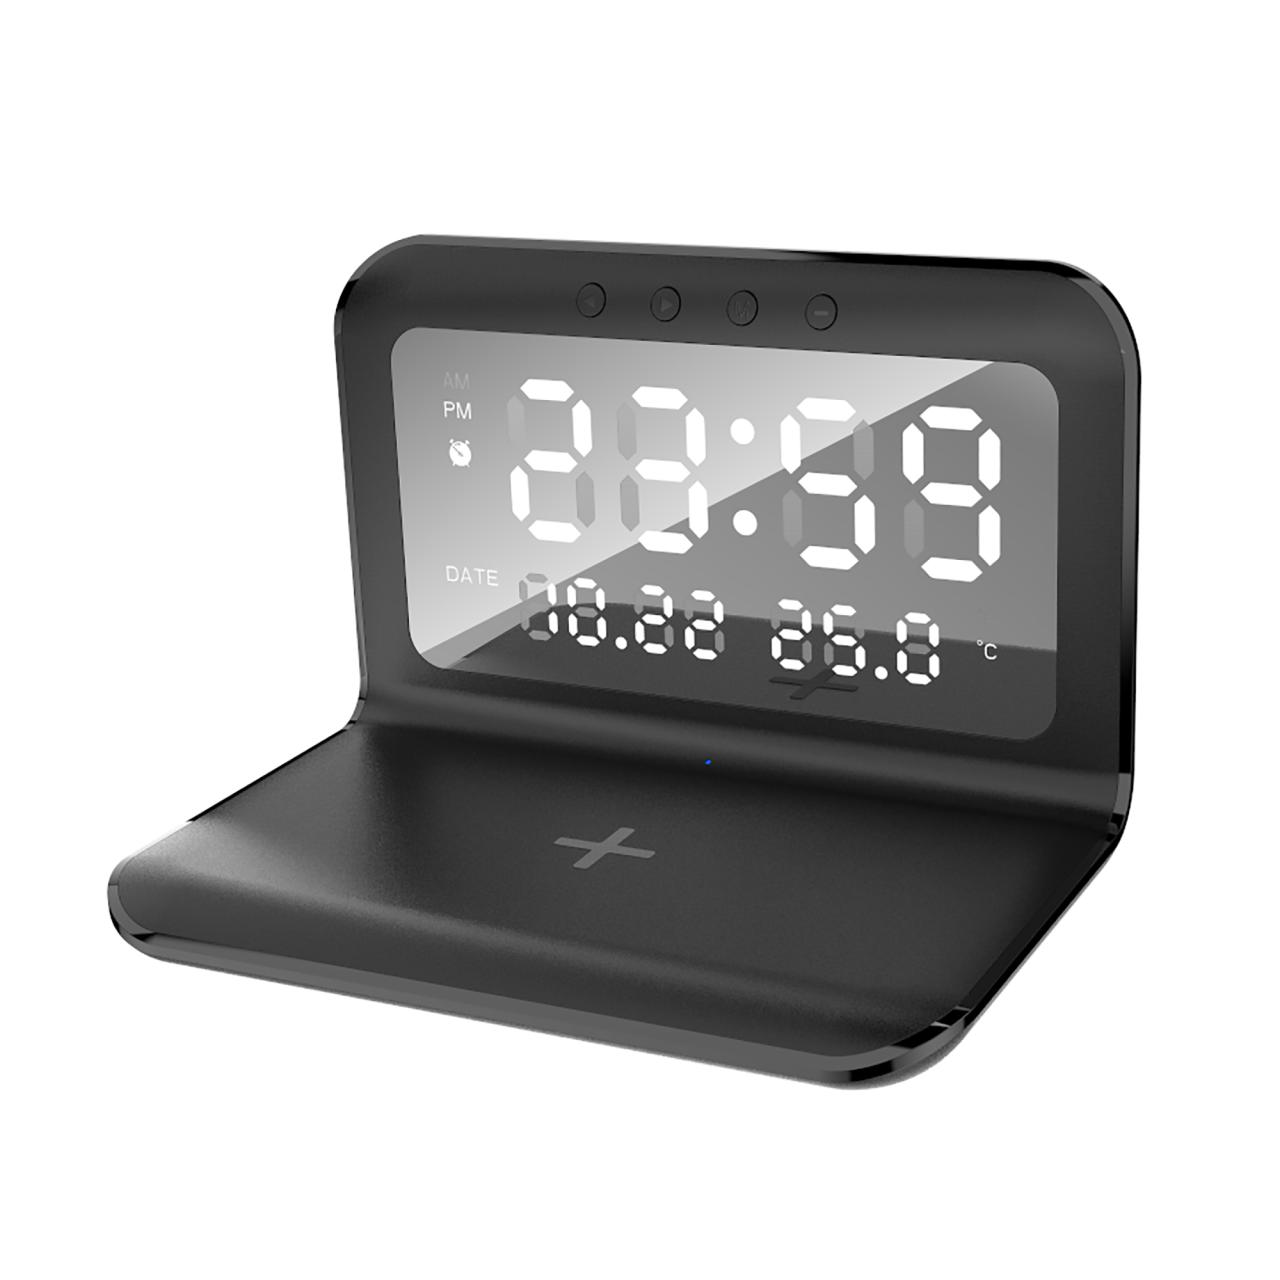 Настольные часы Smart Time с беспроводным (15W) зарядным устройством, будильником и термометром, со съёмным дисплеем